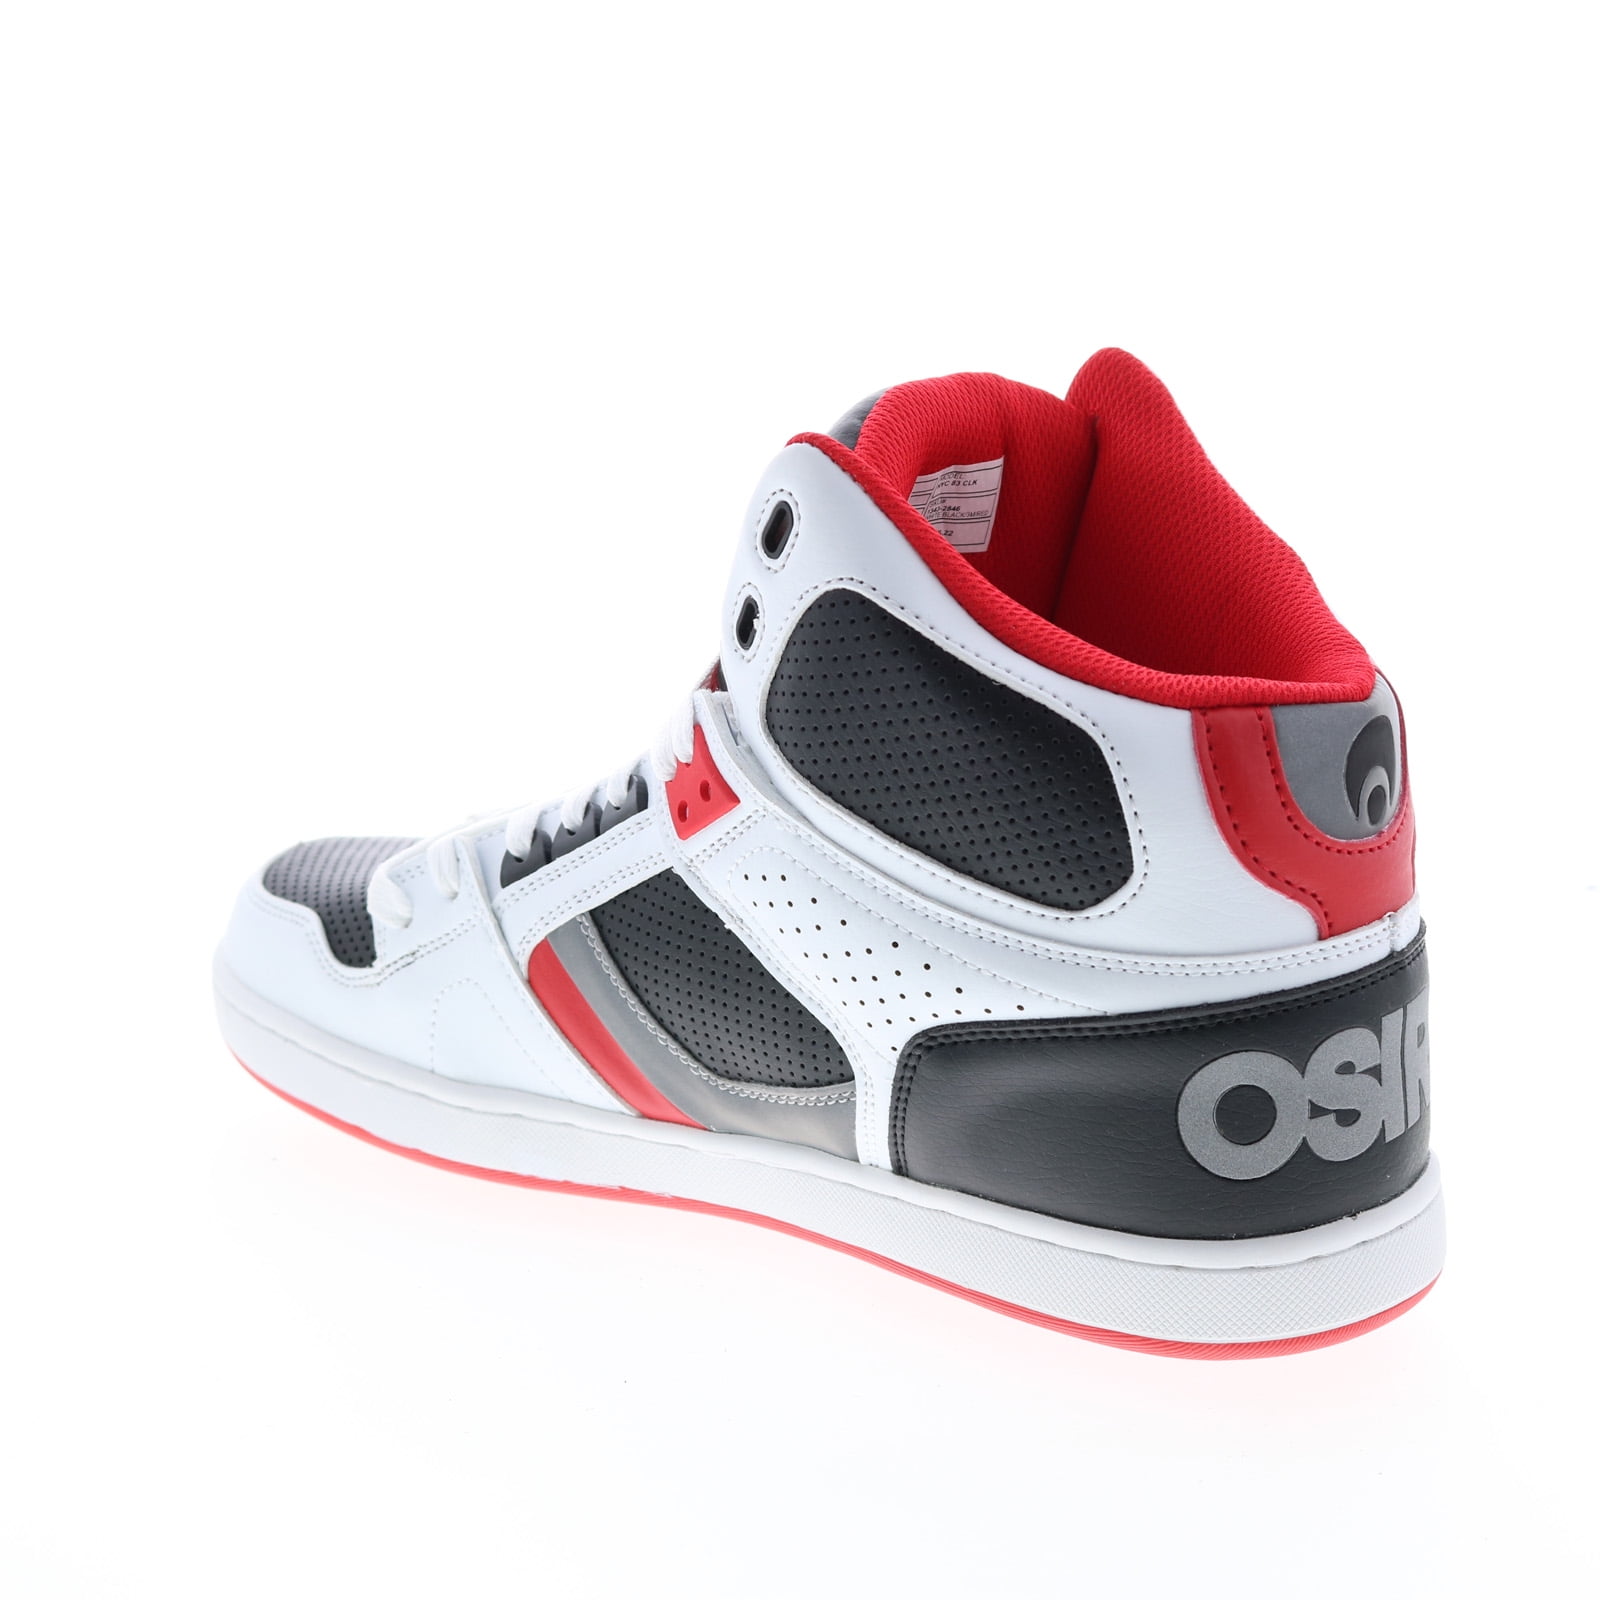 Osiris Adult Mens NYC 83 CLK Skate Inspired Sneakers 